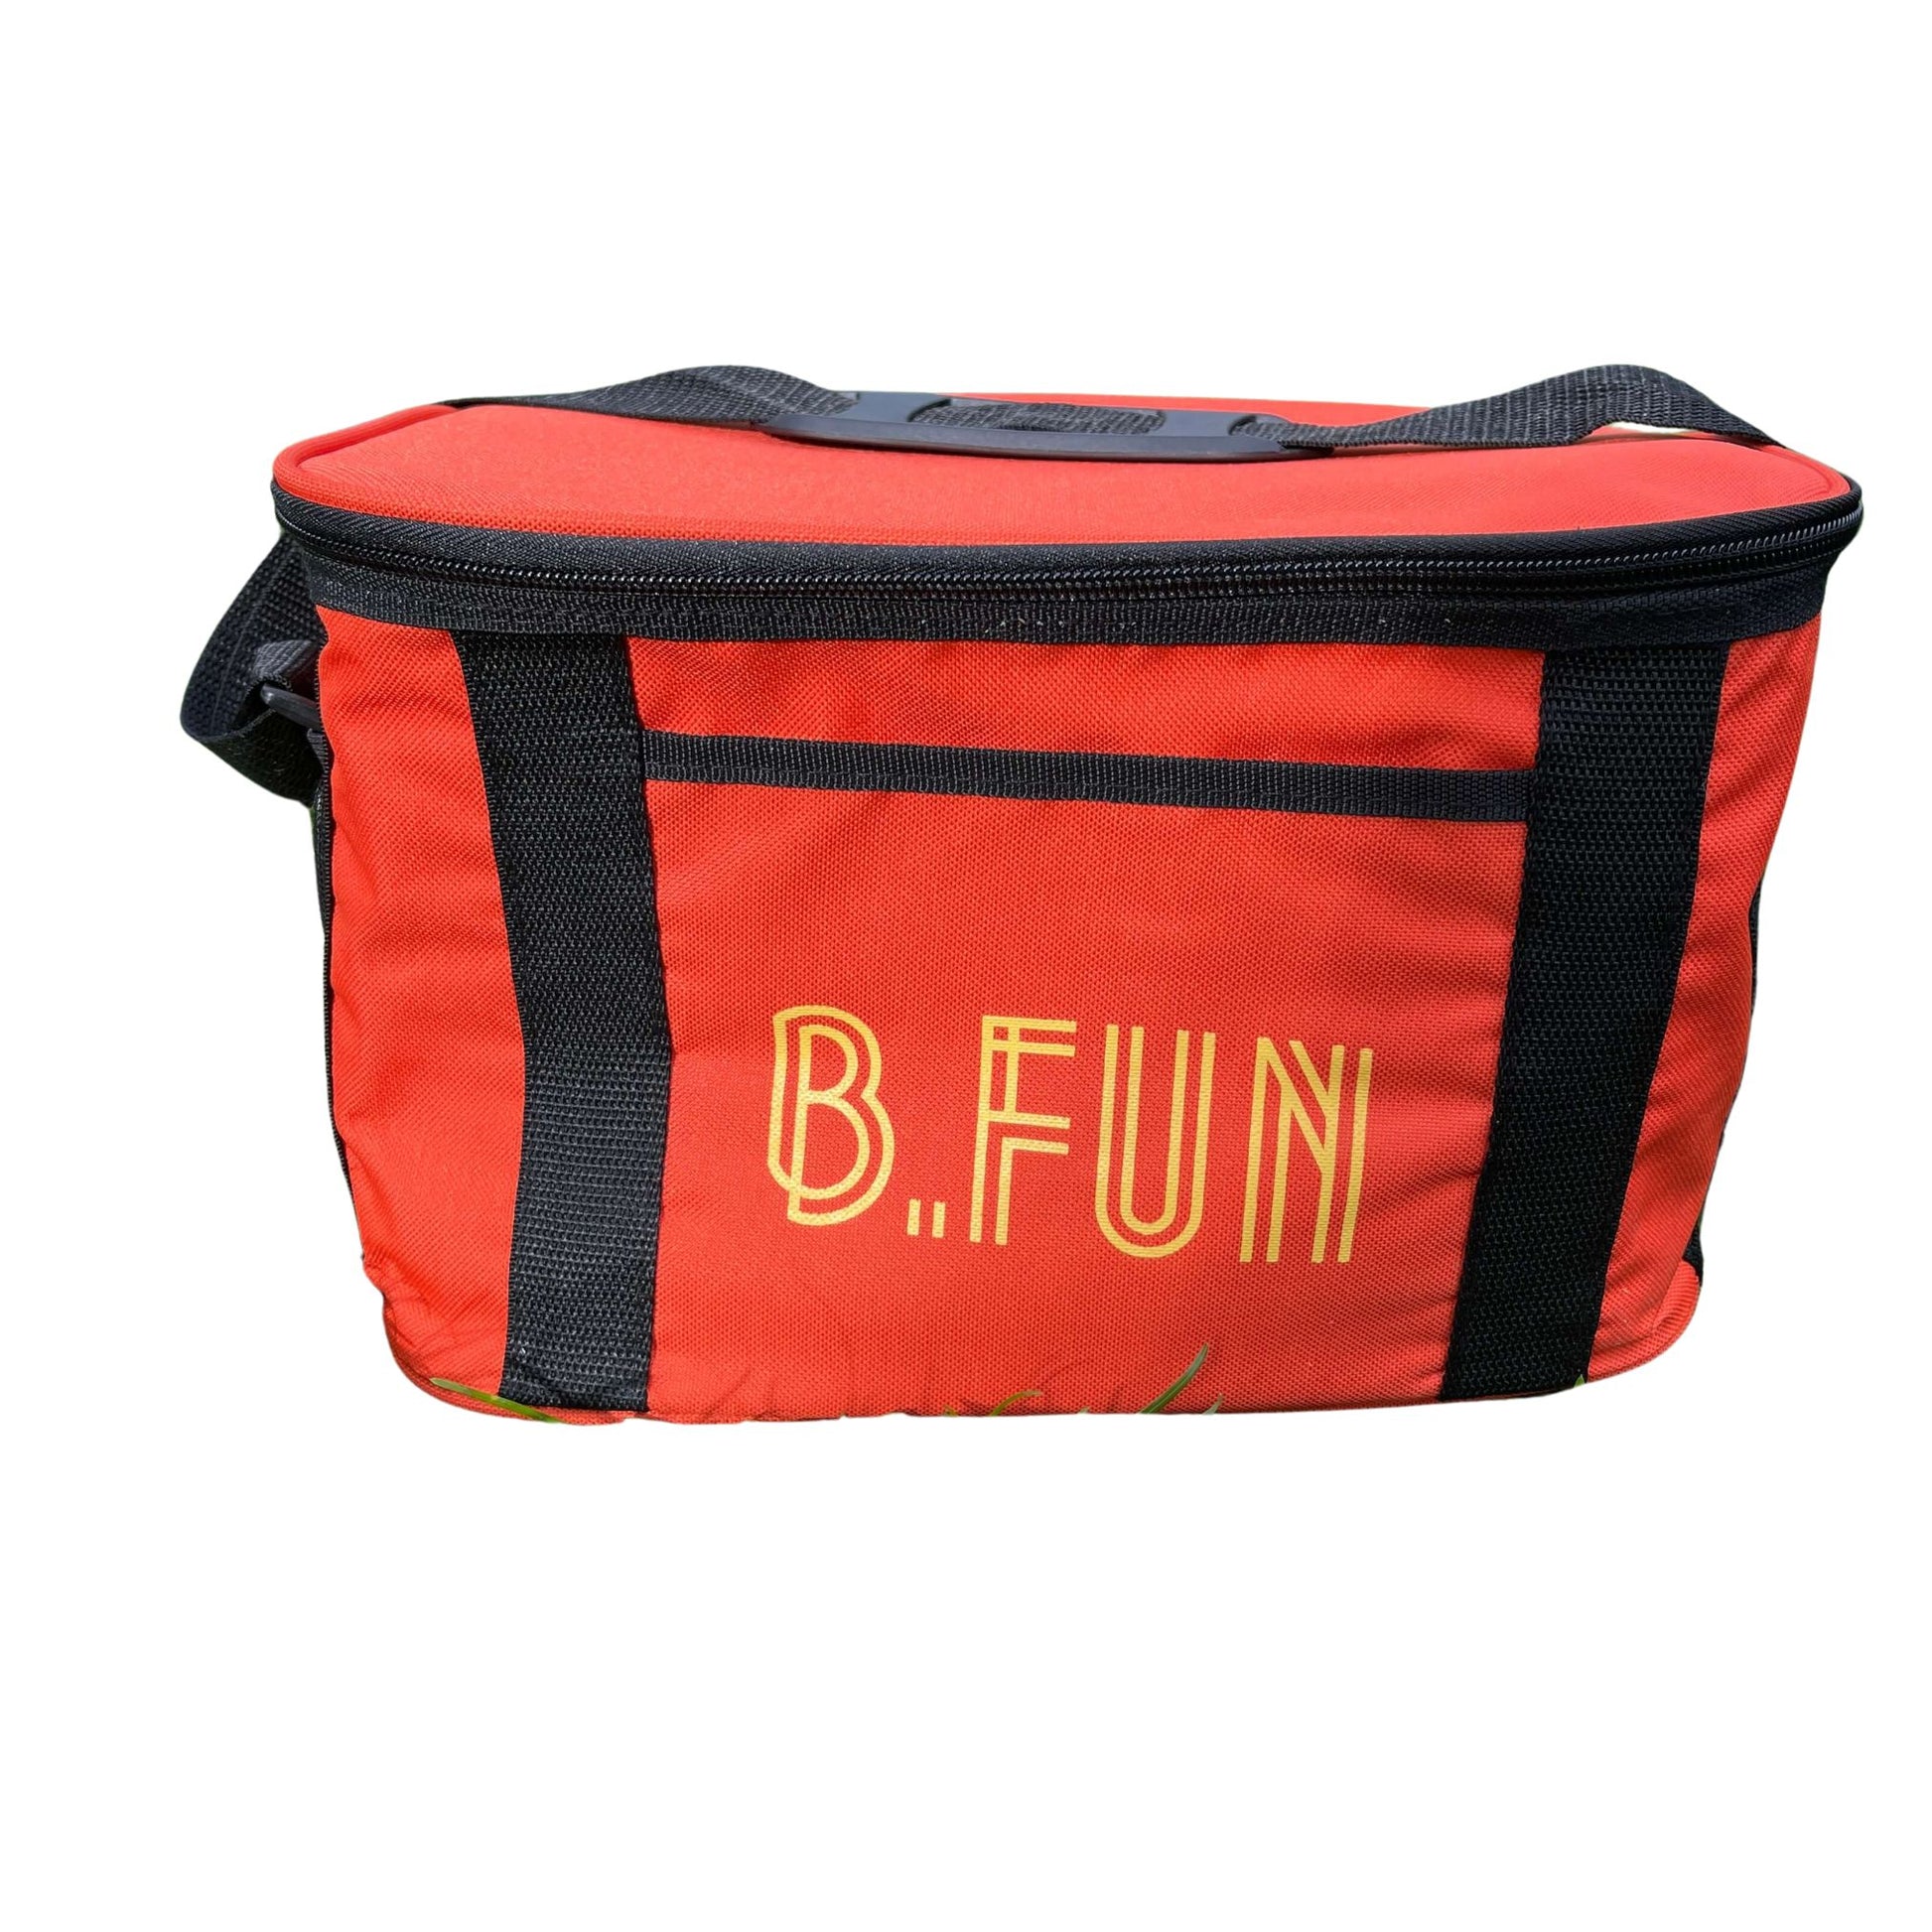 B FUN Large Cooler Bag - Orange with the fun yellow LOGO